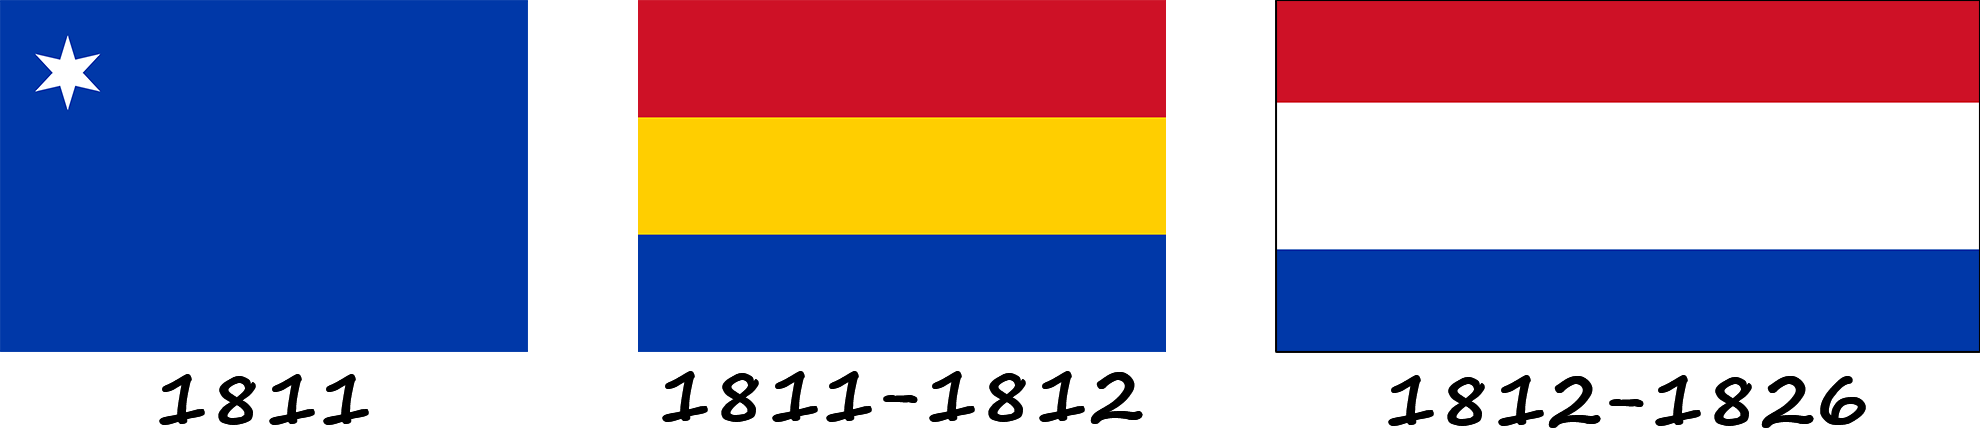 Historia de la bandera de Paraguay